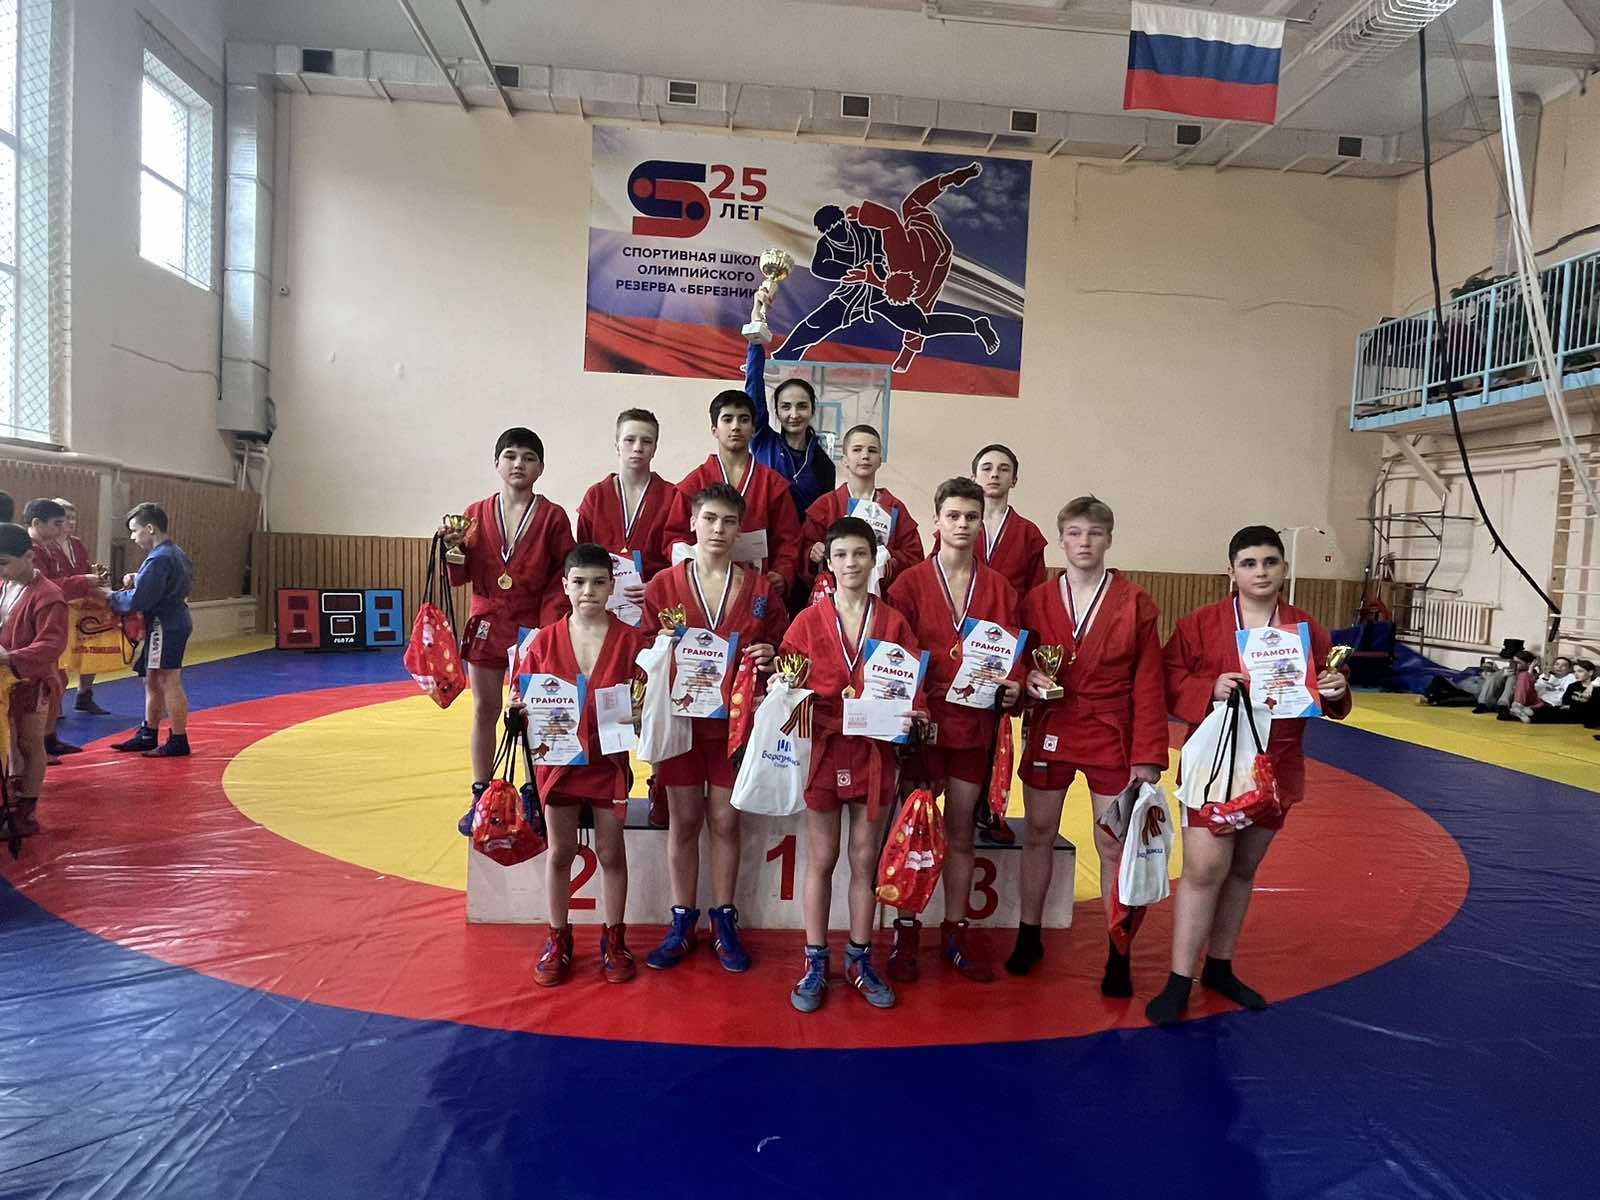 Поздравляем команду  СШОР "Витязь",  победителей командного турнира по самбо в  "Кубок Верхнекамья".